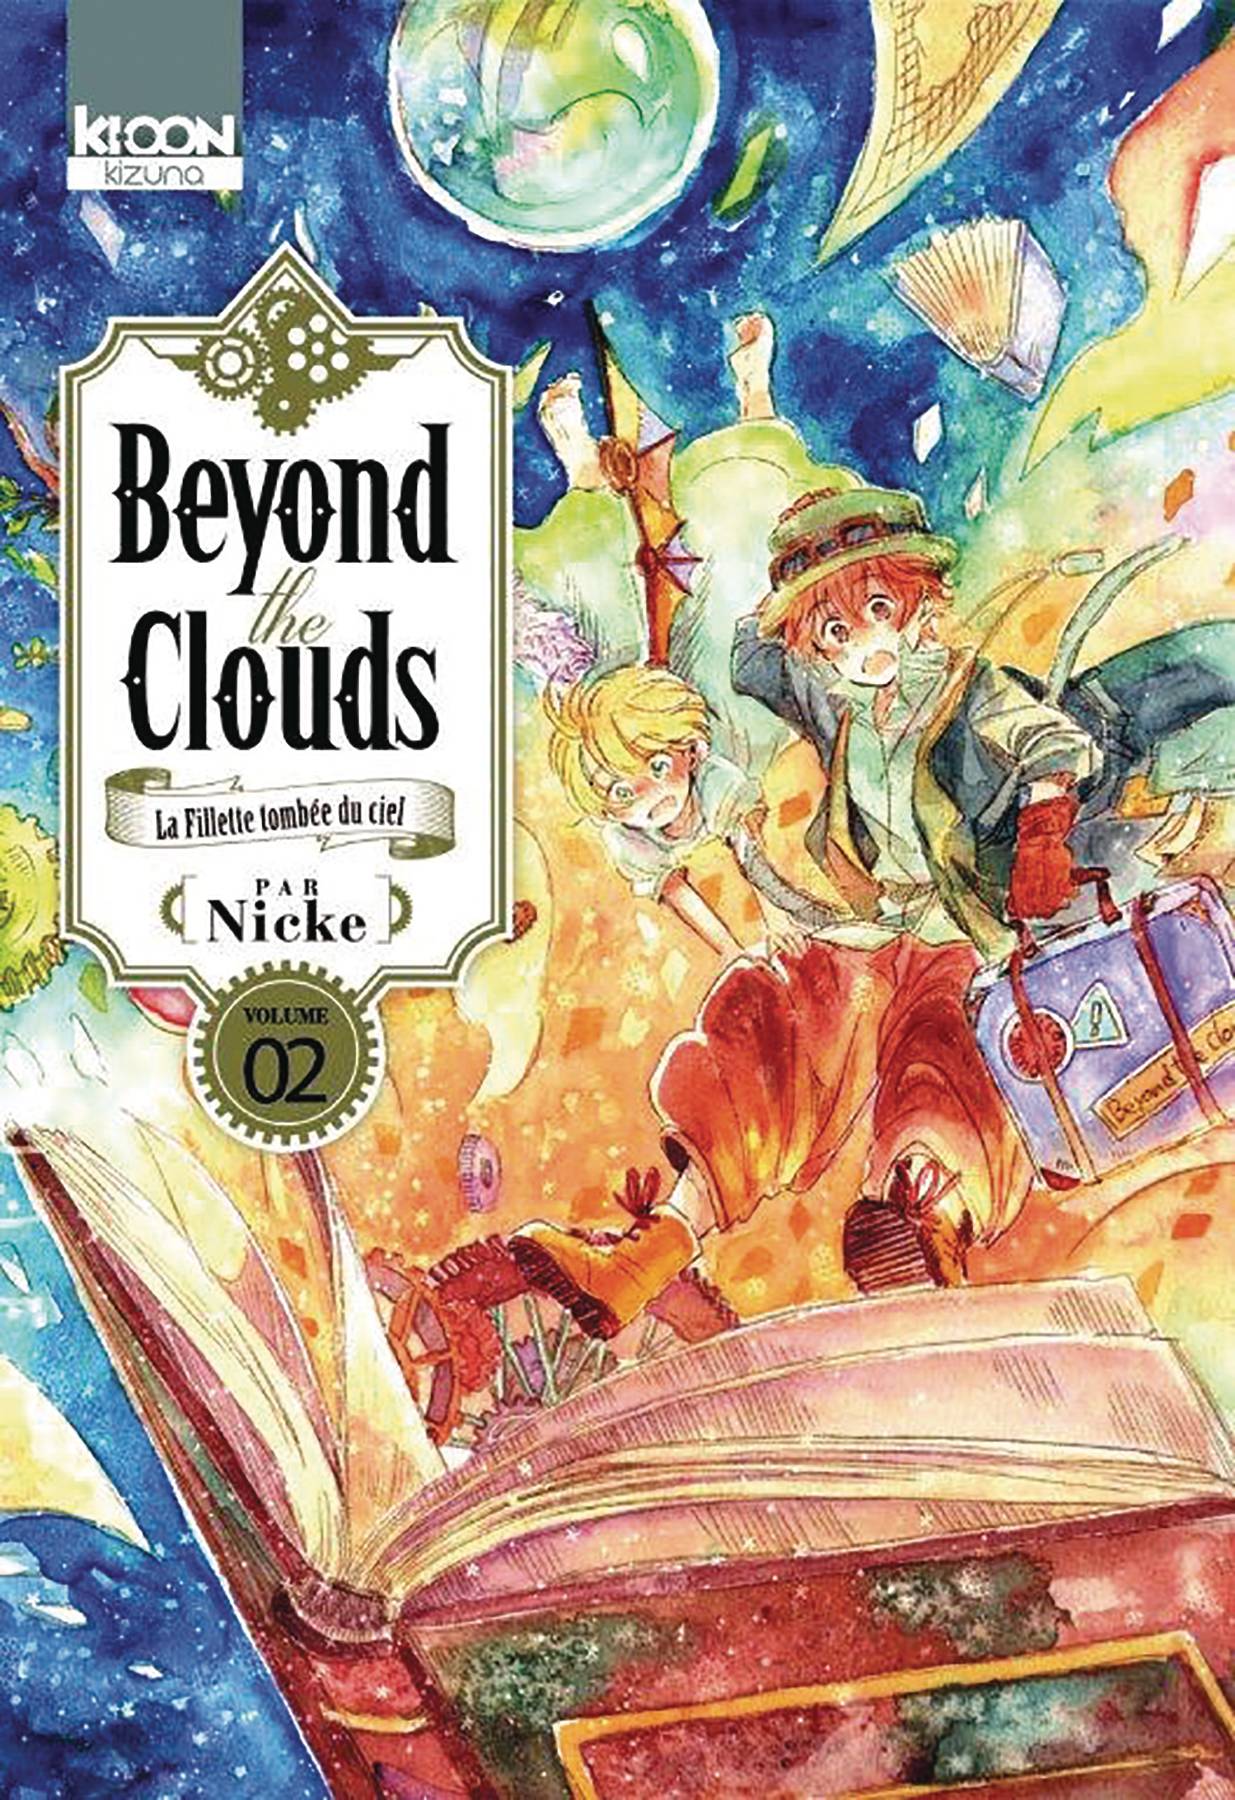 Beyond Clouds Vol. 02